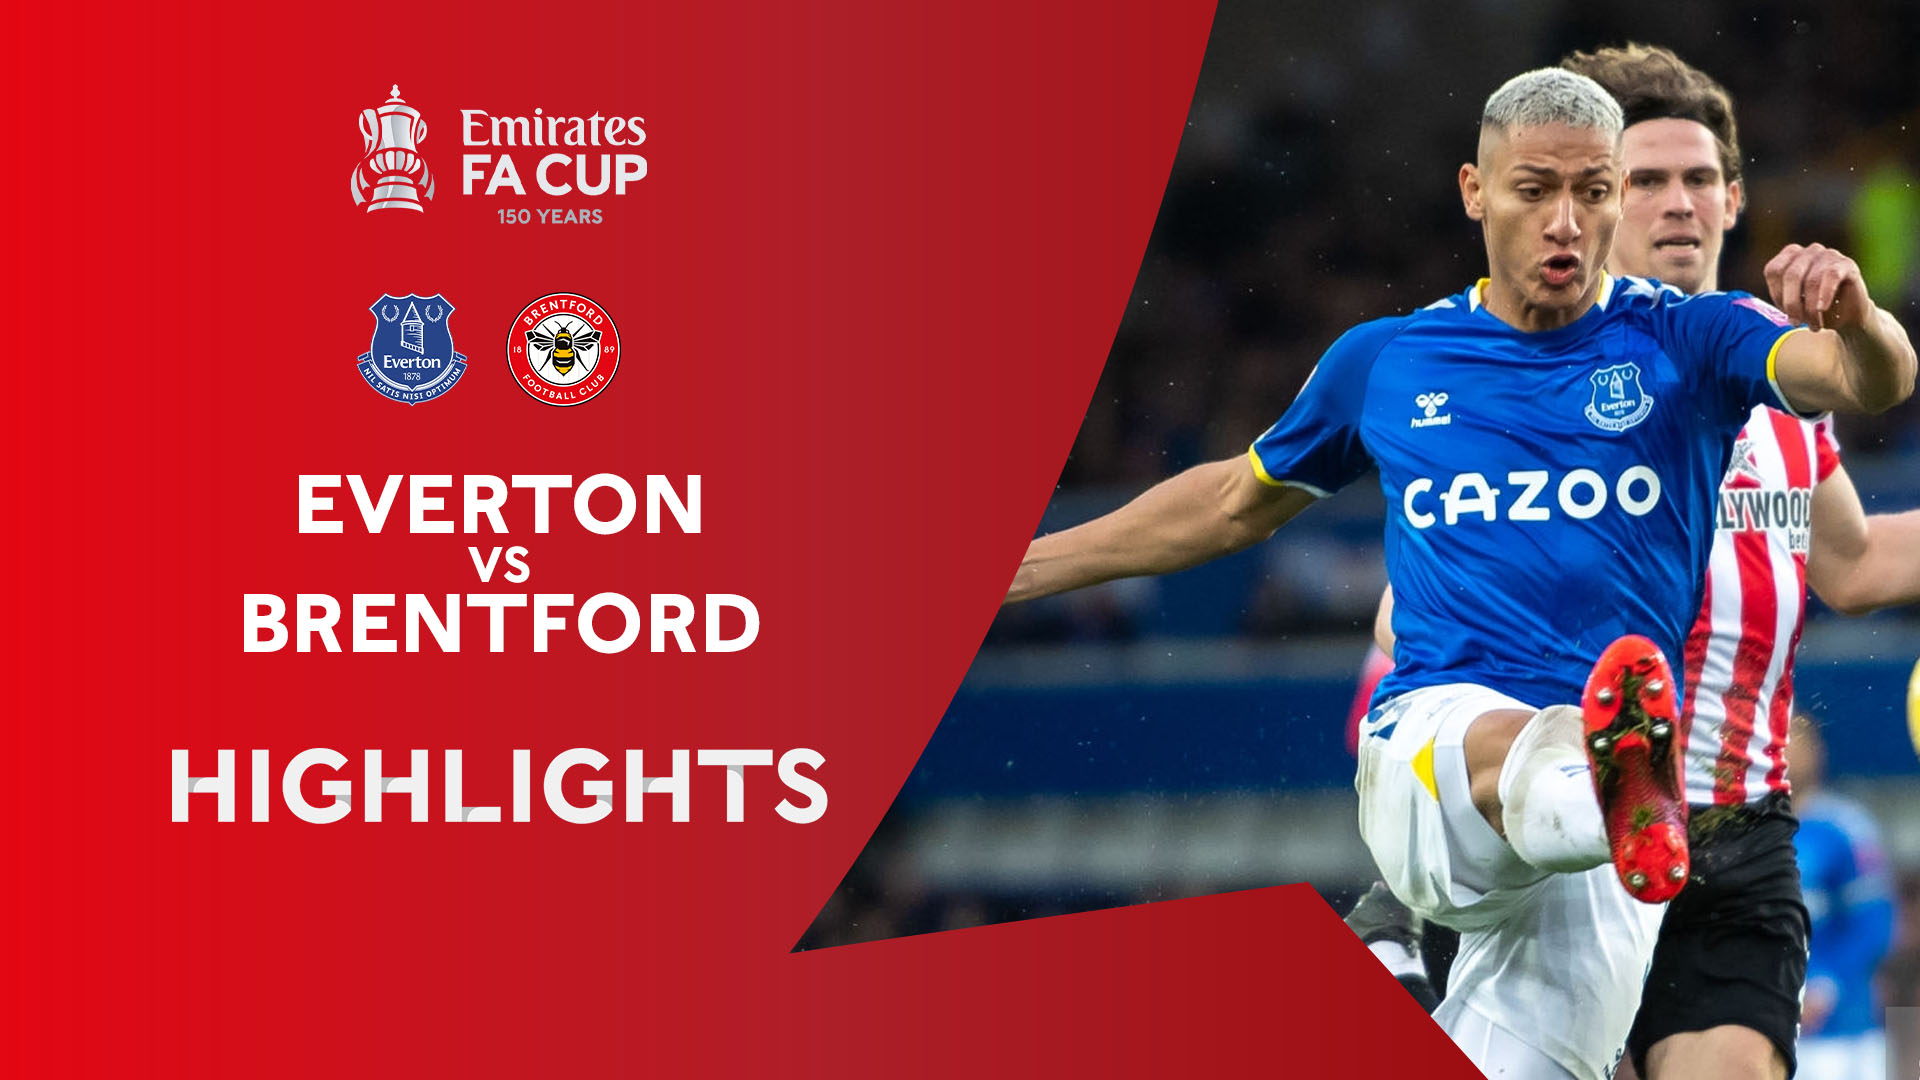 Everton - Brentford | Richarlison lập công - Highlights vòng 4 FA CUP 2021/2022